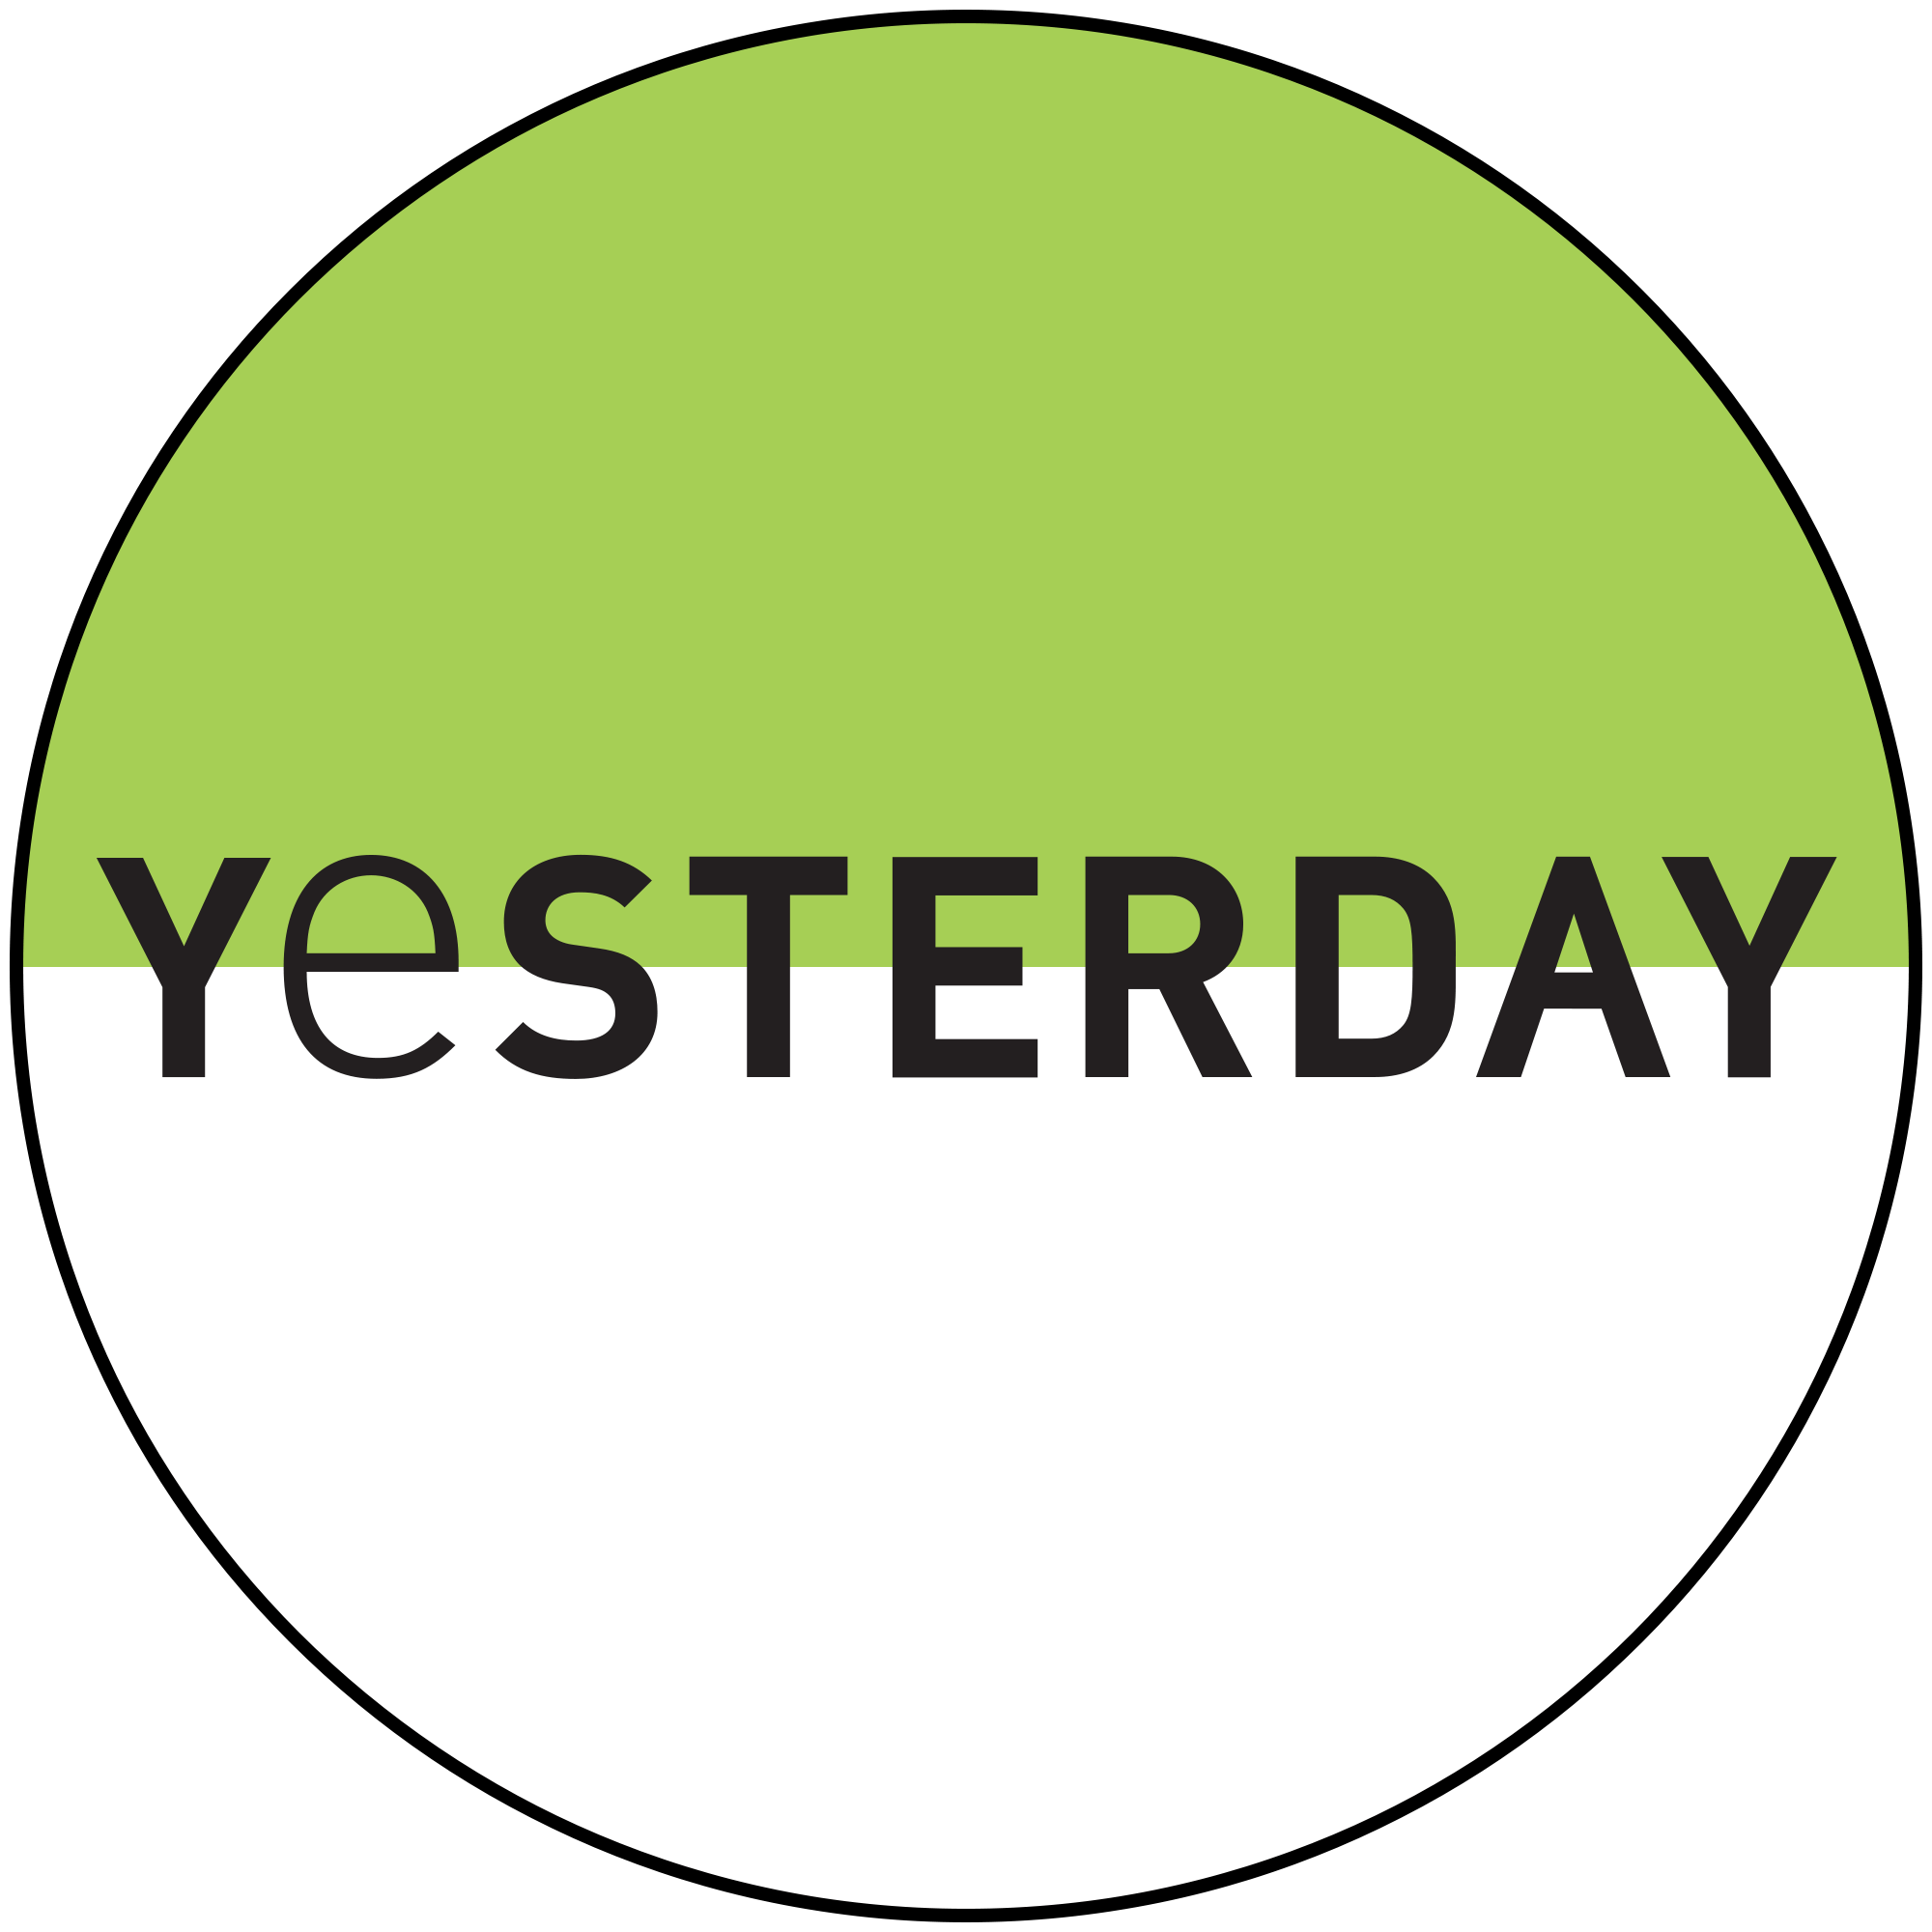 Google Yesterday Logo - File:Yesterday (UKTV) logo.svg - Wikimedia Commons